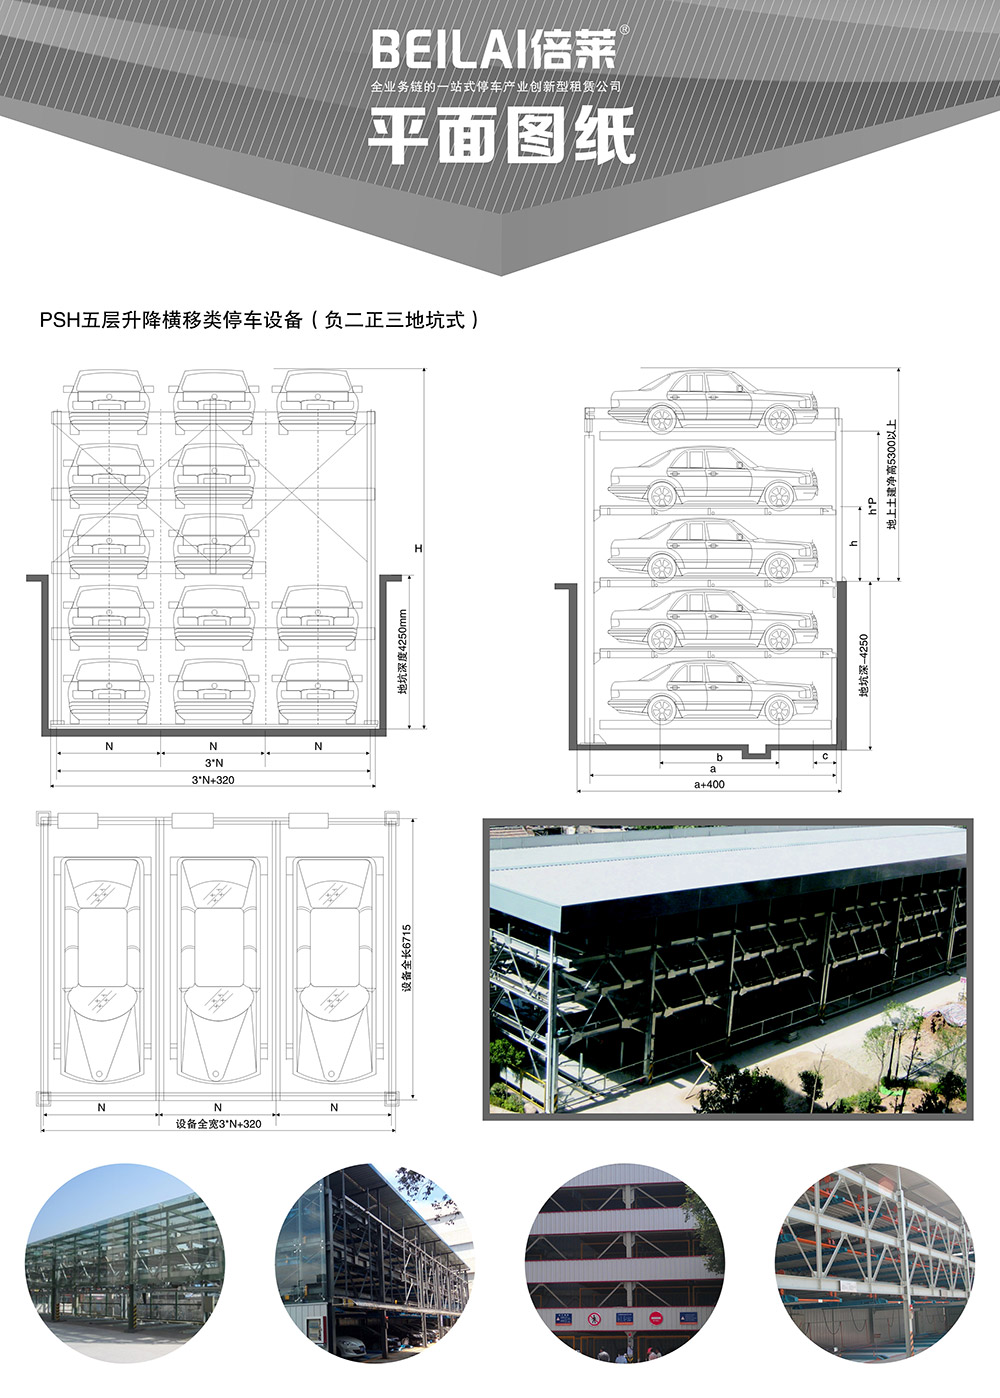 成都重庆负二正三地坑式PSH5D2五层升降横移立体车库设备平面图纸.jpg